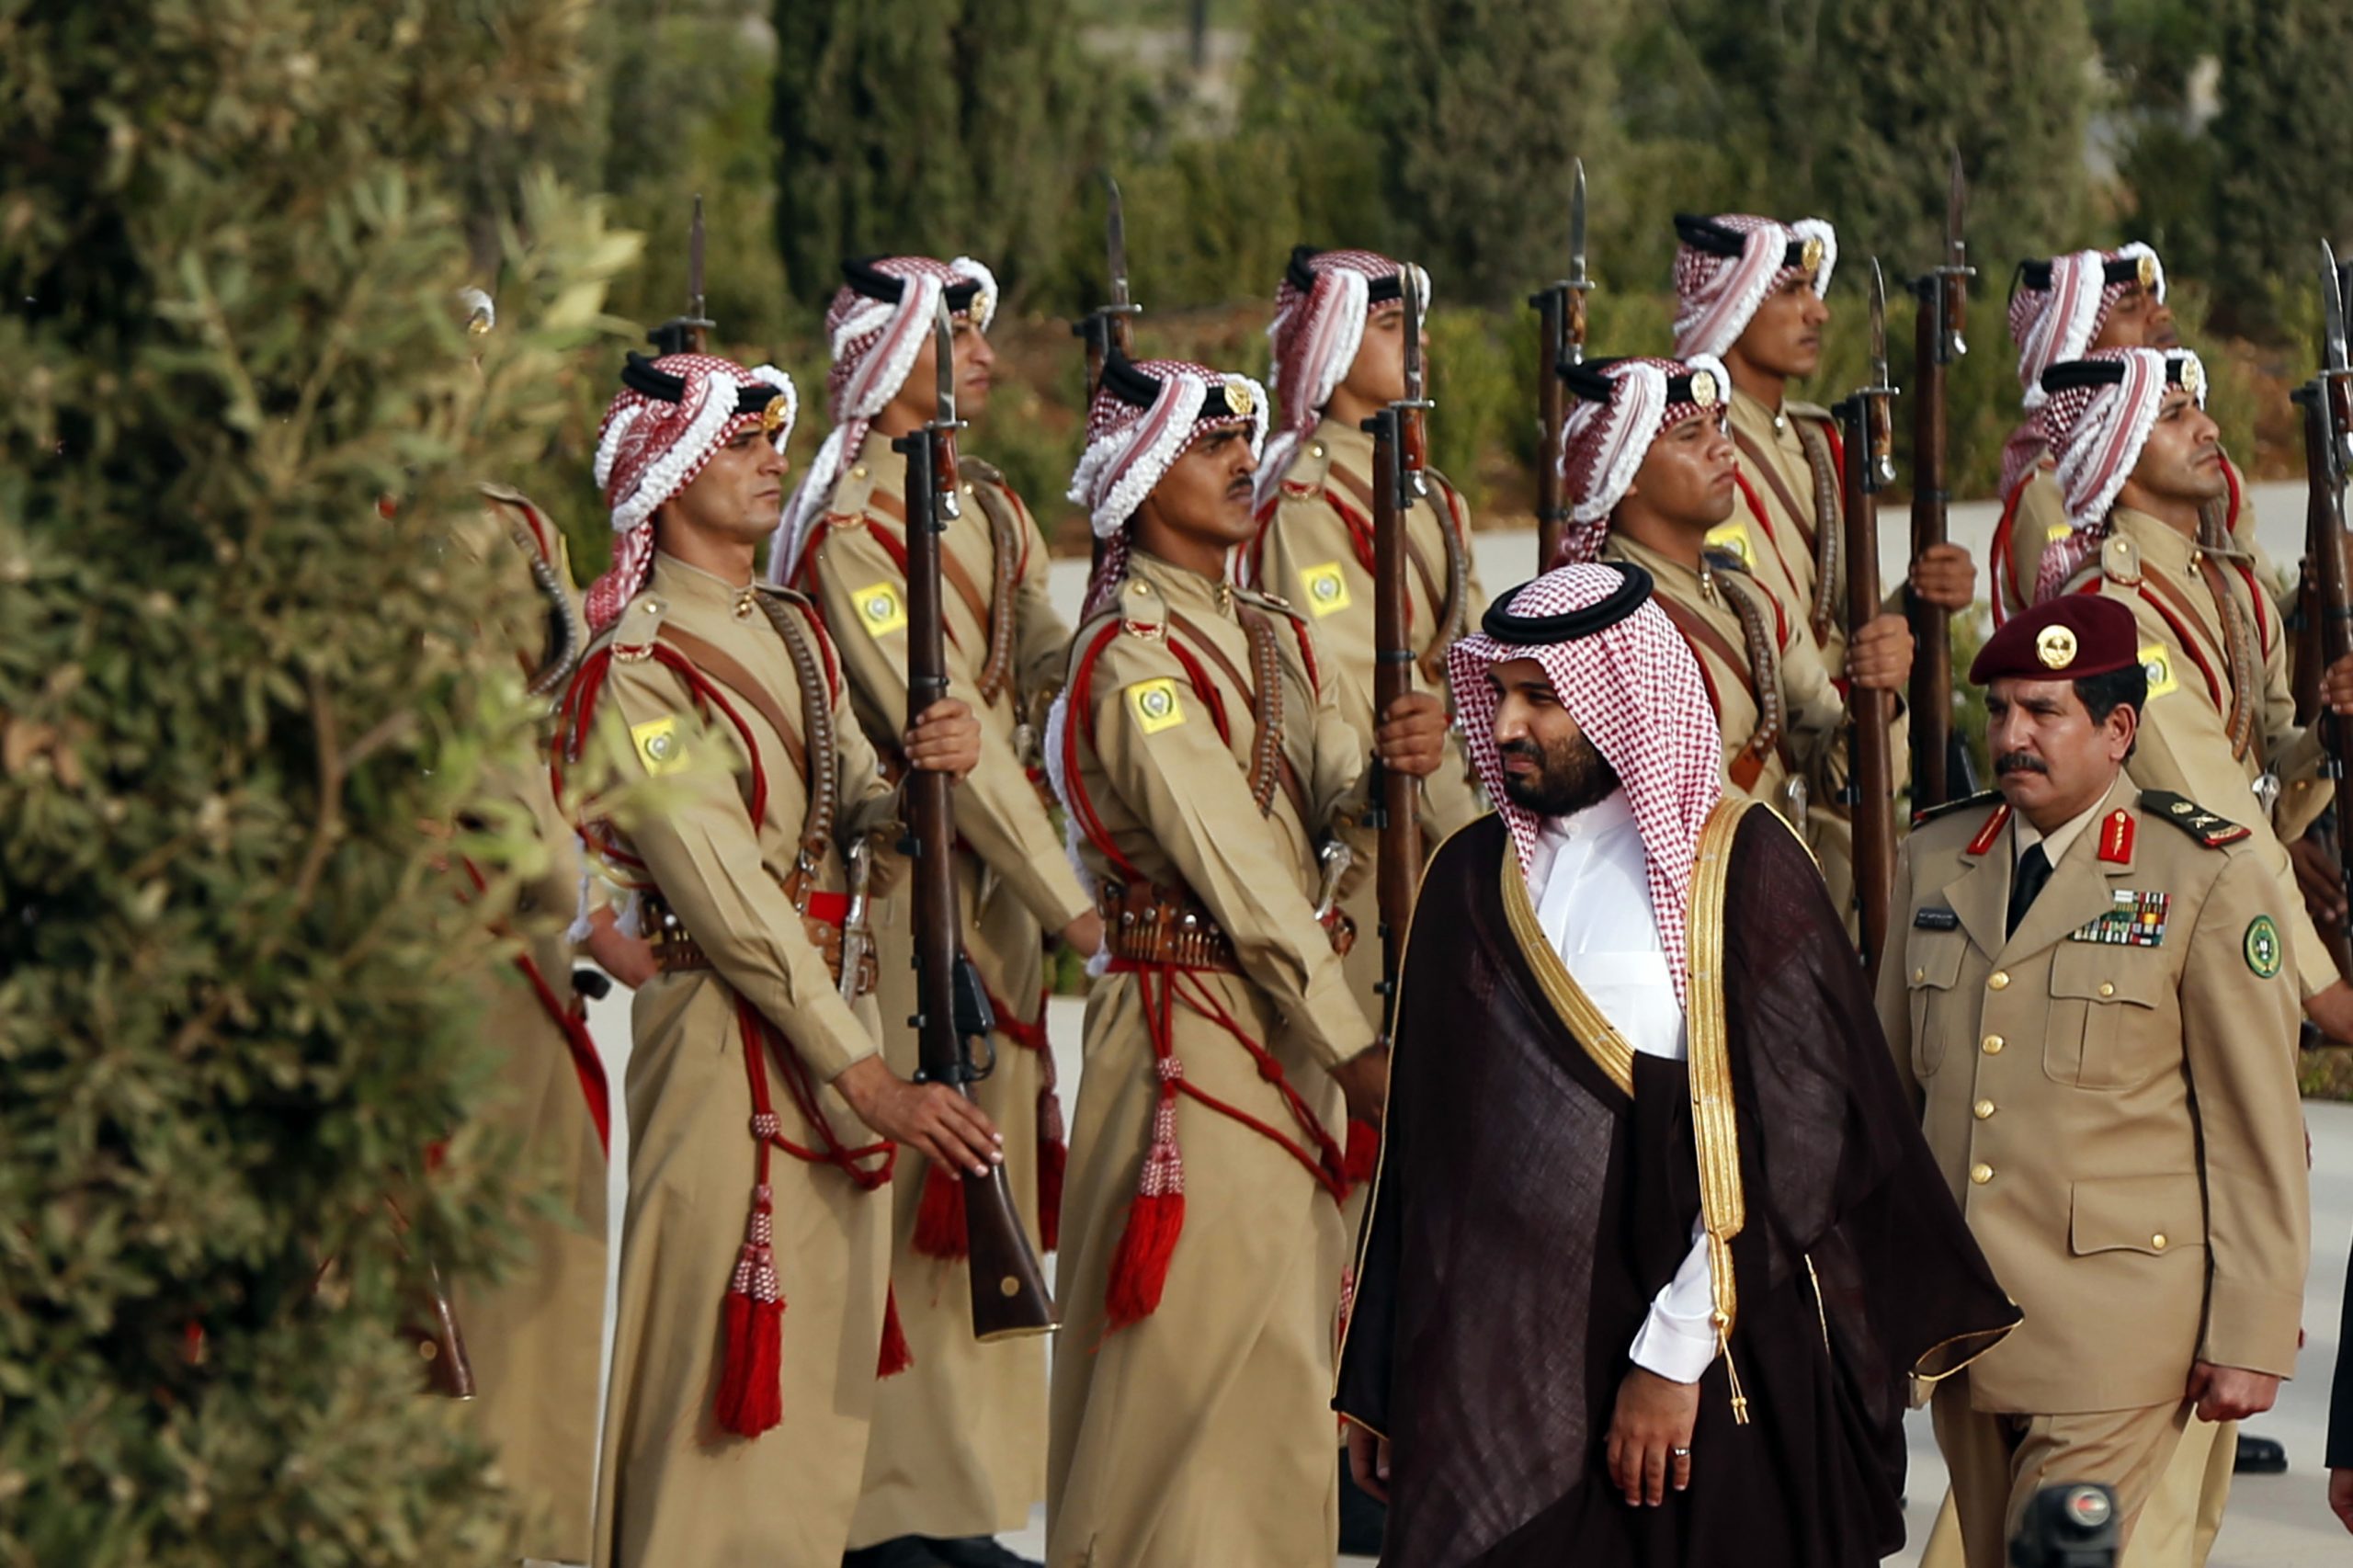 Мусульманские войска. Королевская гвардия Саудовской Аравии. Национальная гвардия Саудовской Аравии. Форма армии Саудовской Аравии. Национальная гвардия короля Саудовской Аравии.